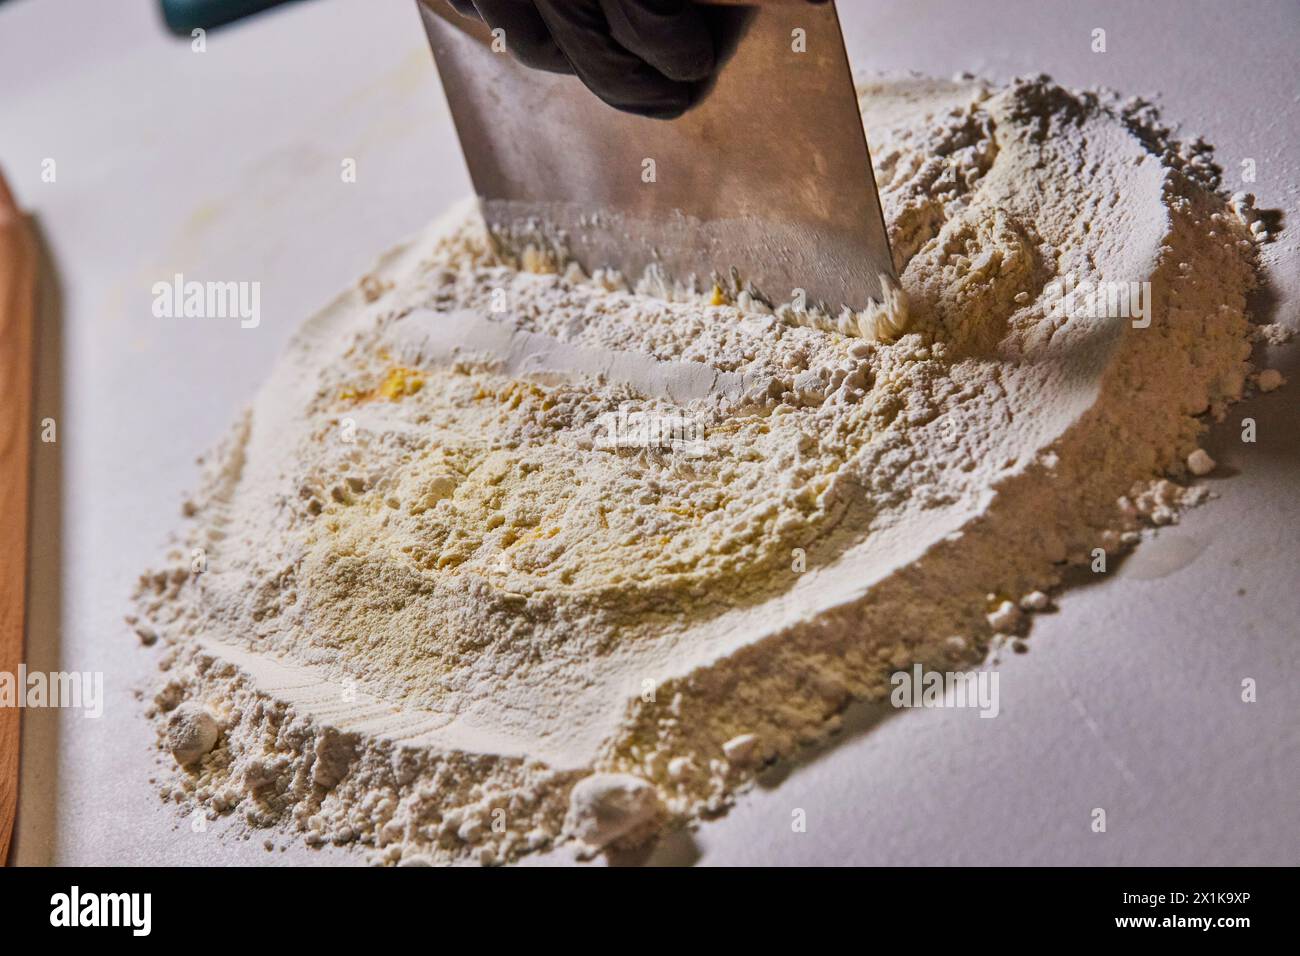 Preparación para hornear con harina y raspador de banco, detalle de mano con guantes Foto de stock